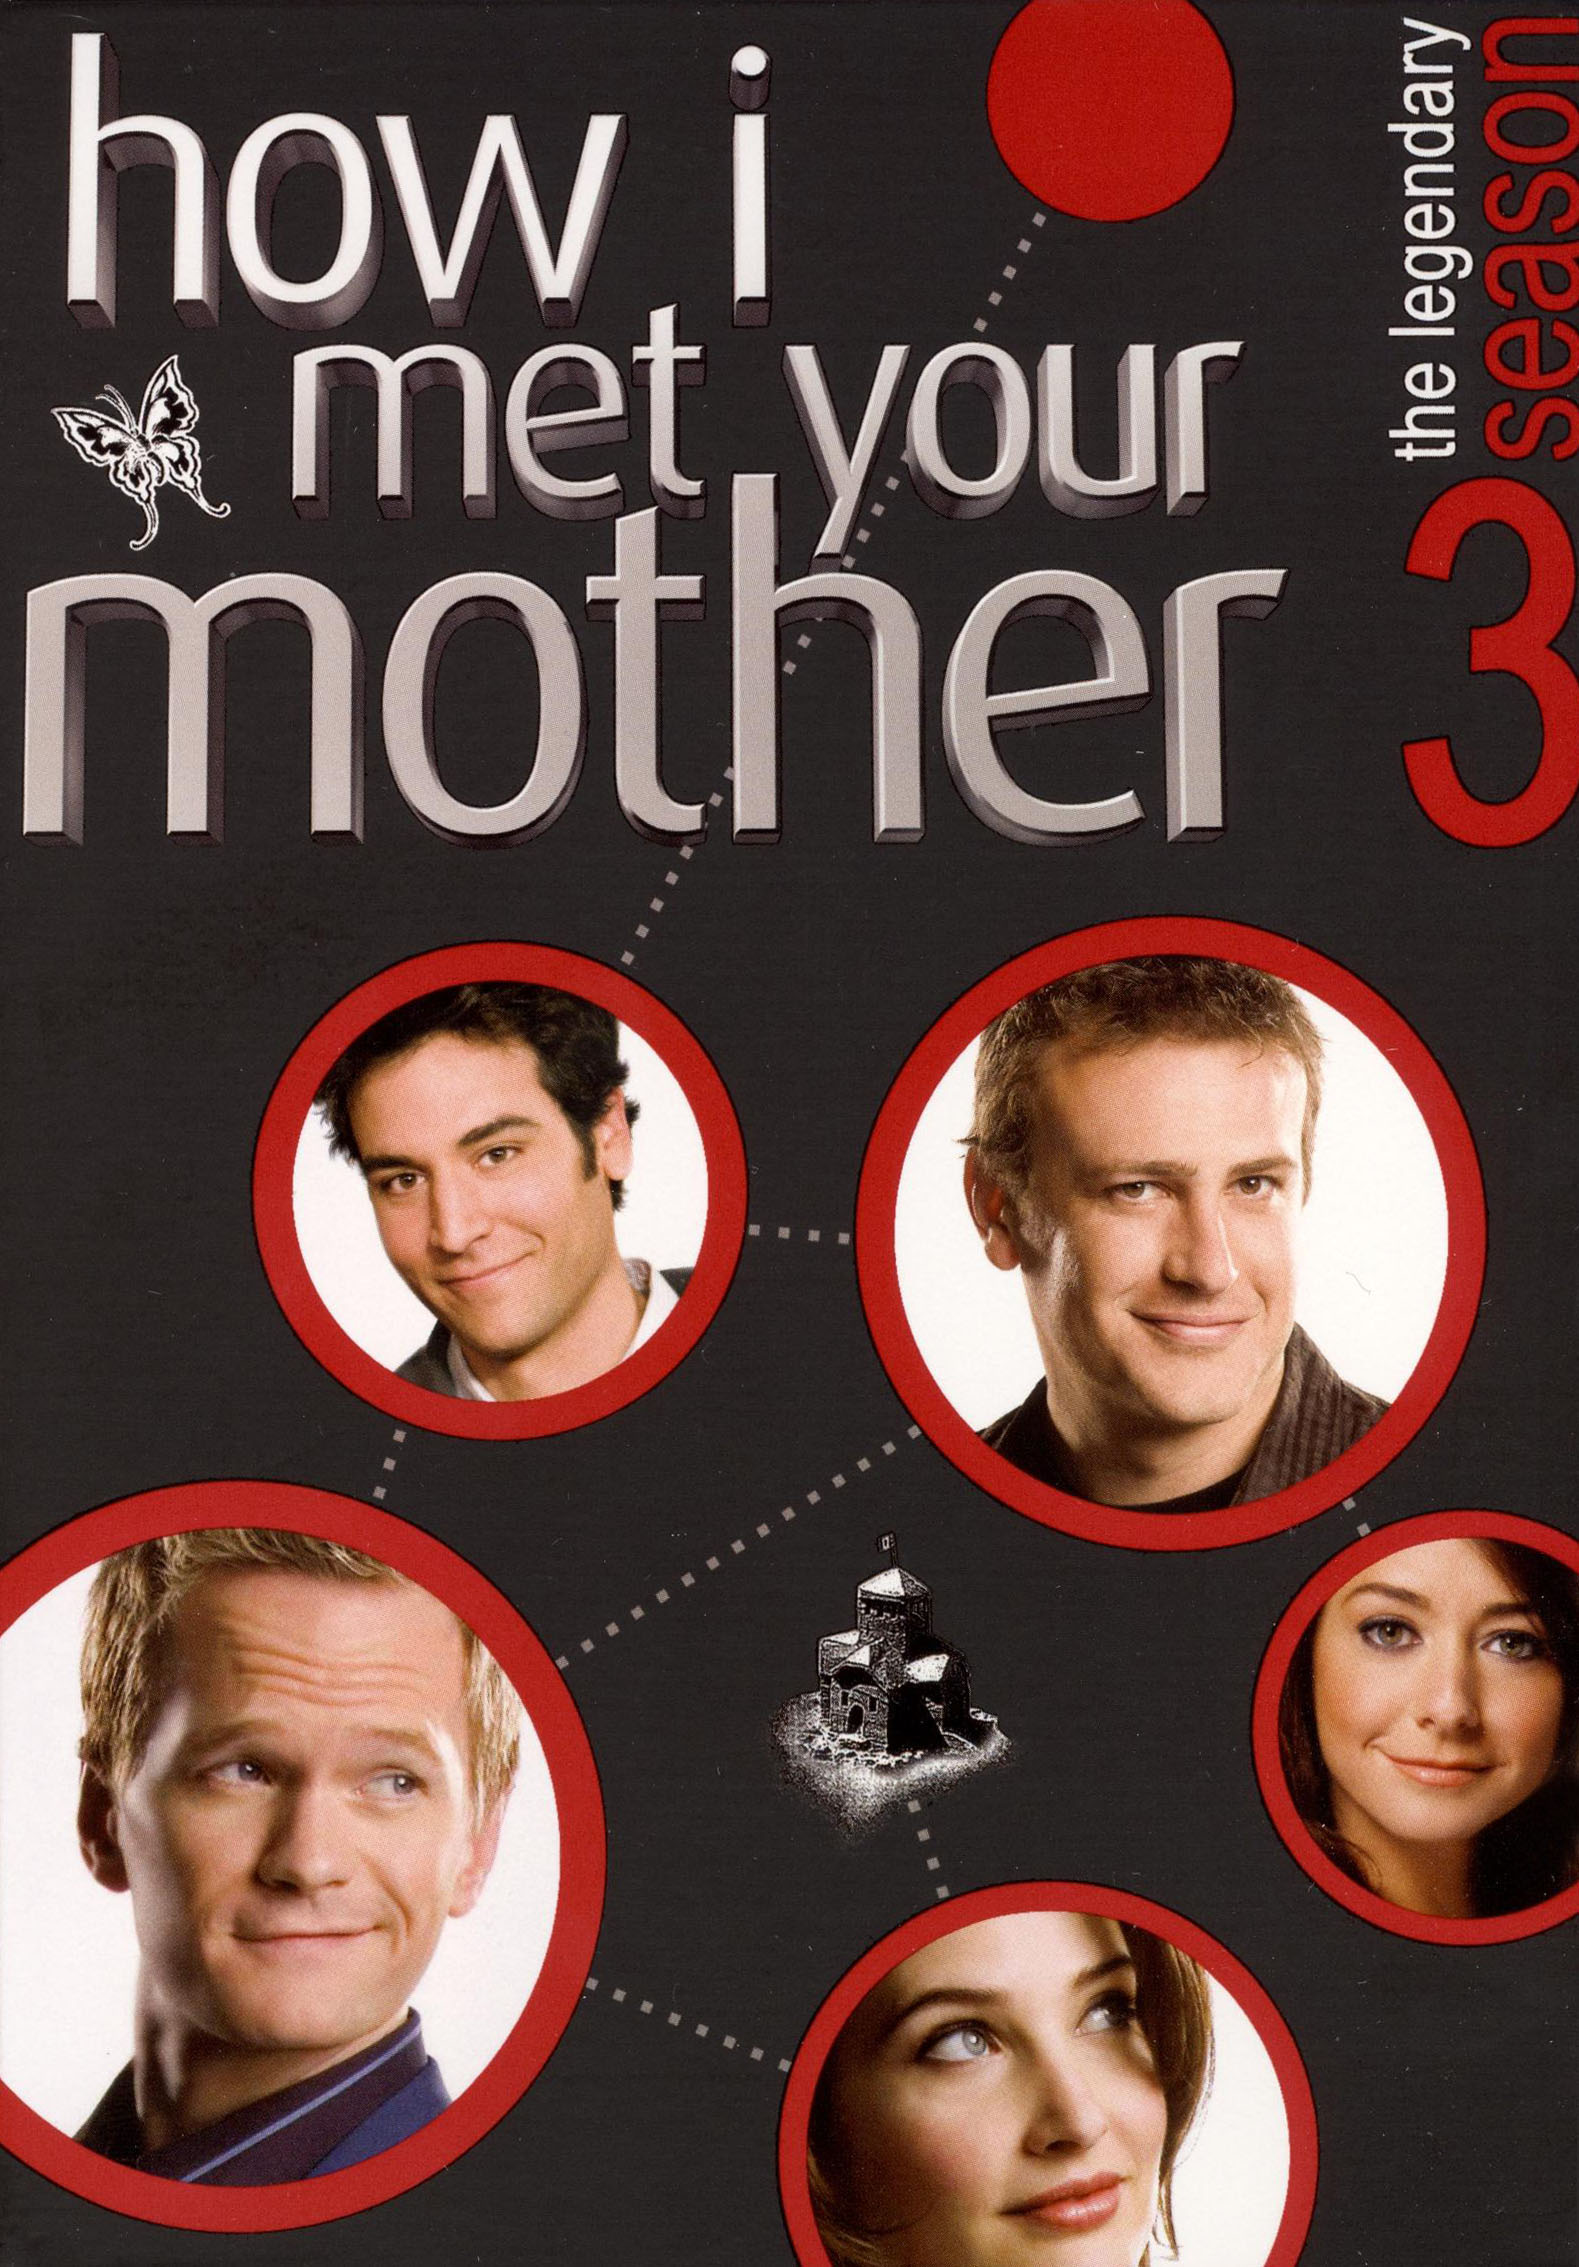 How I Met Your Mother: The Complete Series - Best Buy